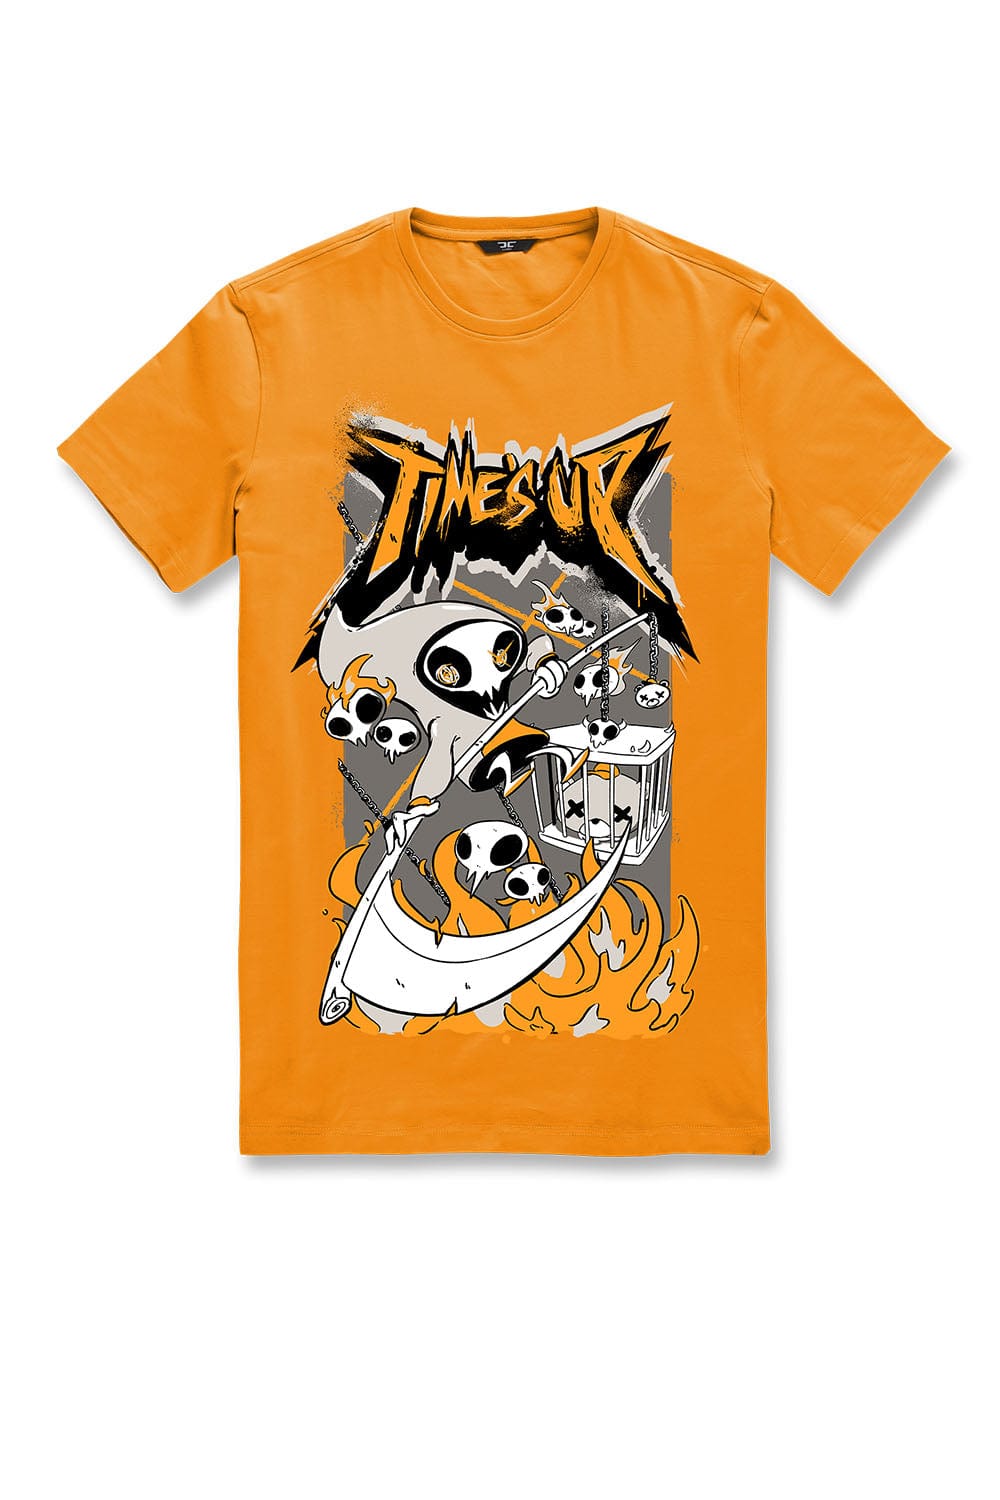 JC Big Men Big Men's Time's Up T-Shirt (Orange) 4XL / Orange